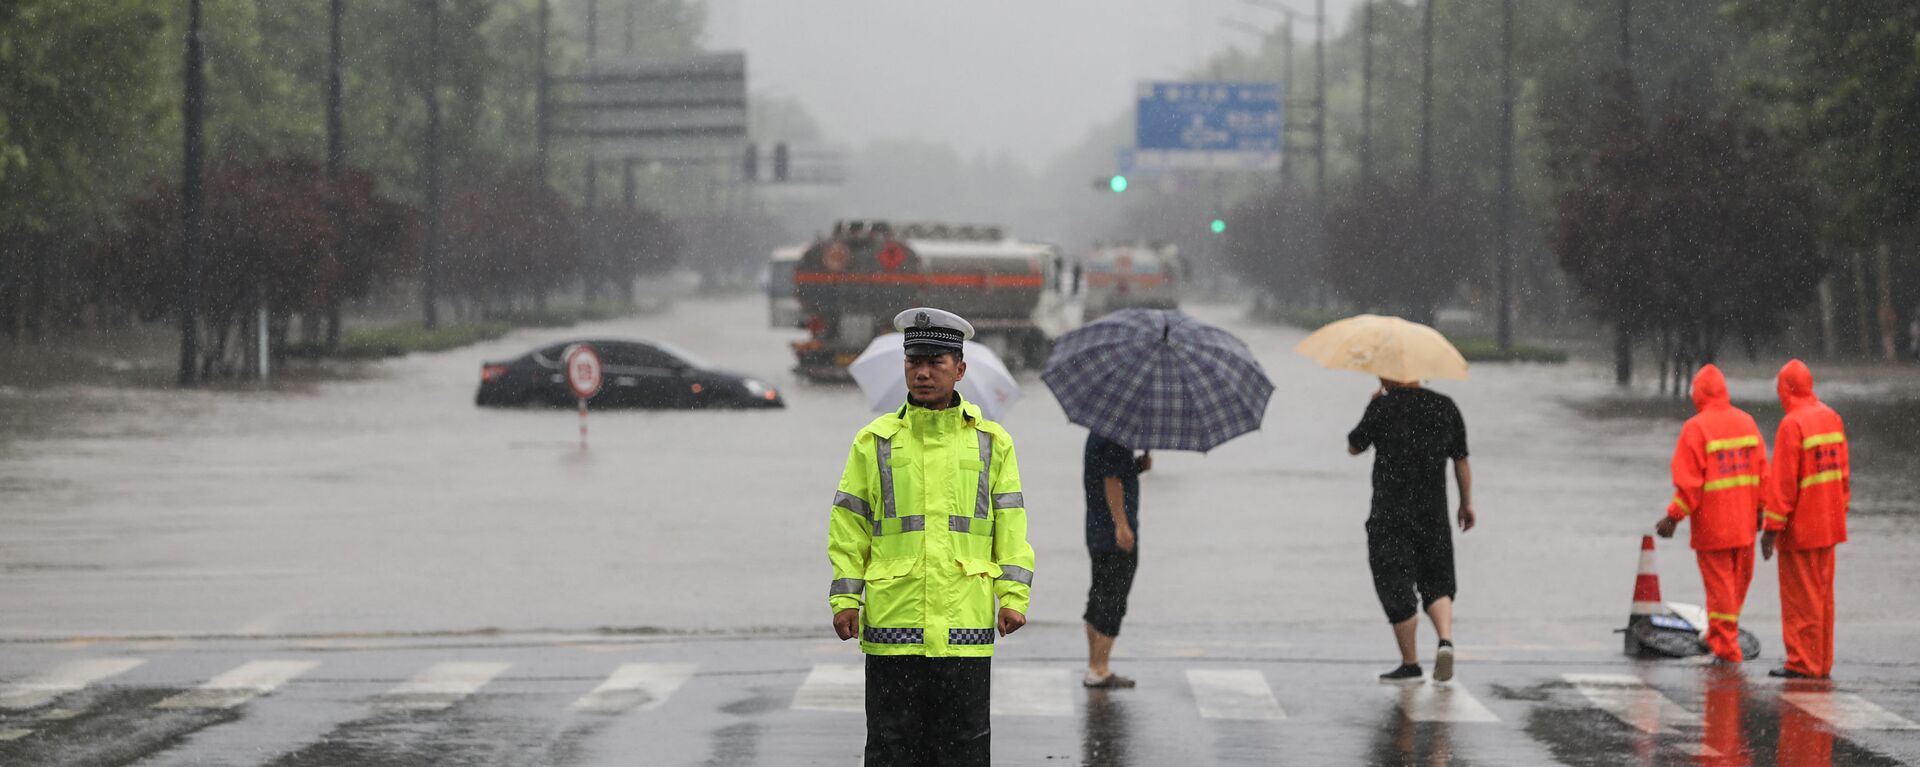 فيضانات هائلة تنجم عن أمطار غزيرة في تشنغتشو، وسط محافظة هينان، الصين 20 يوليو 2021 - سبوتنيك عربي, 1920, 24.07.2021